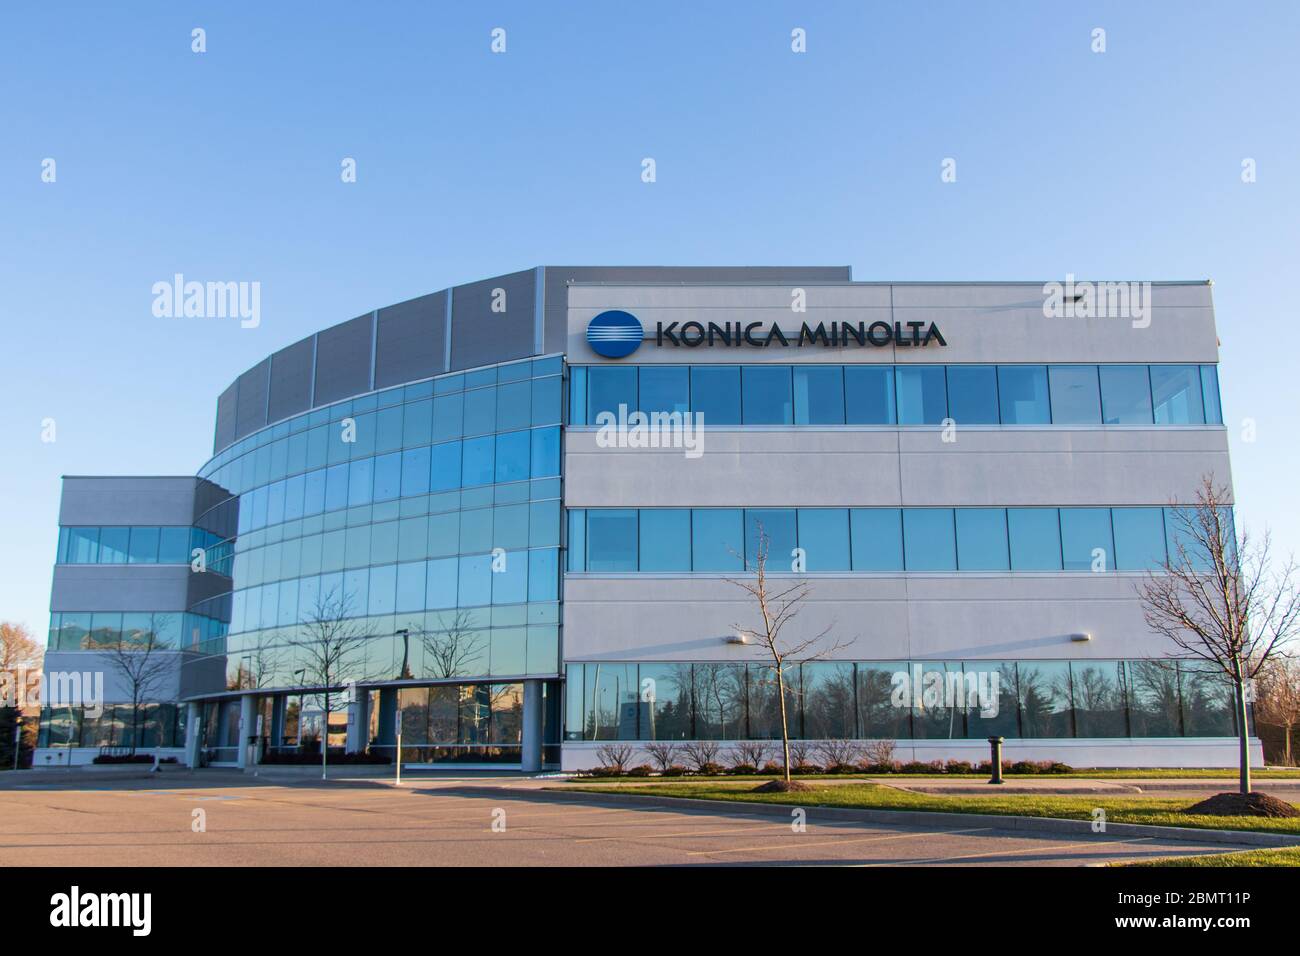 Konica Minolta, un ufficio multinazionale giapponese di tecnologia vicino a Toronto con il loro logo visto in cima all'edificio. Foto Stock